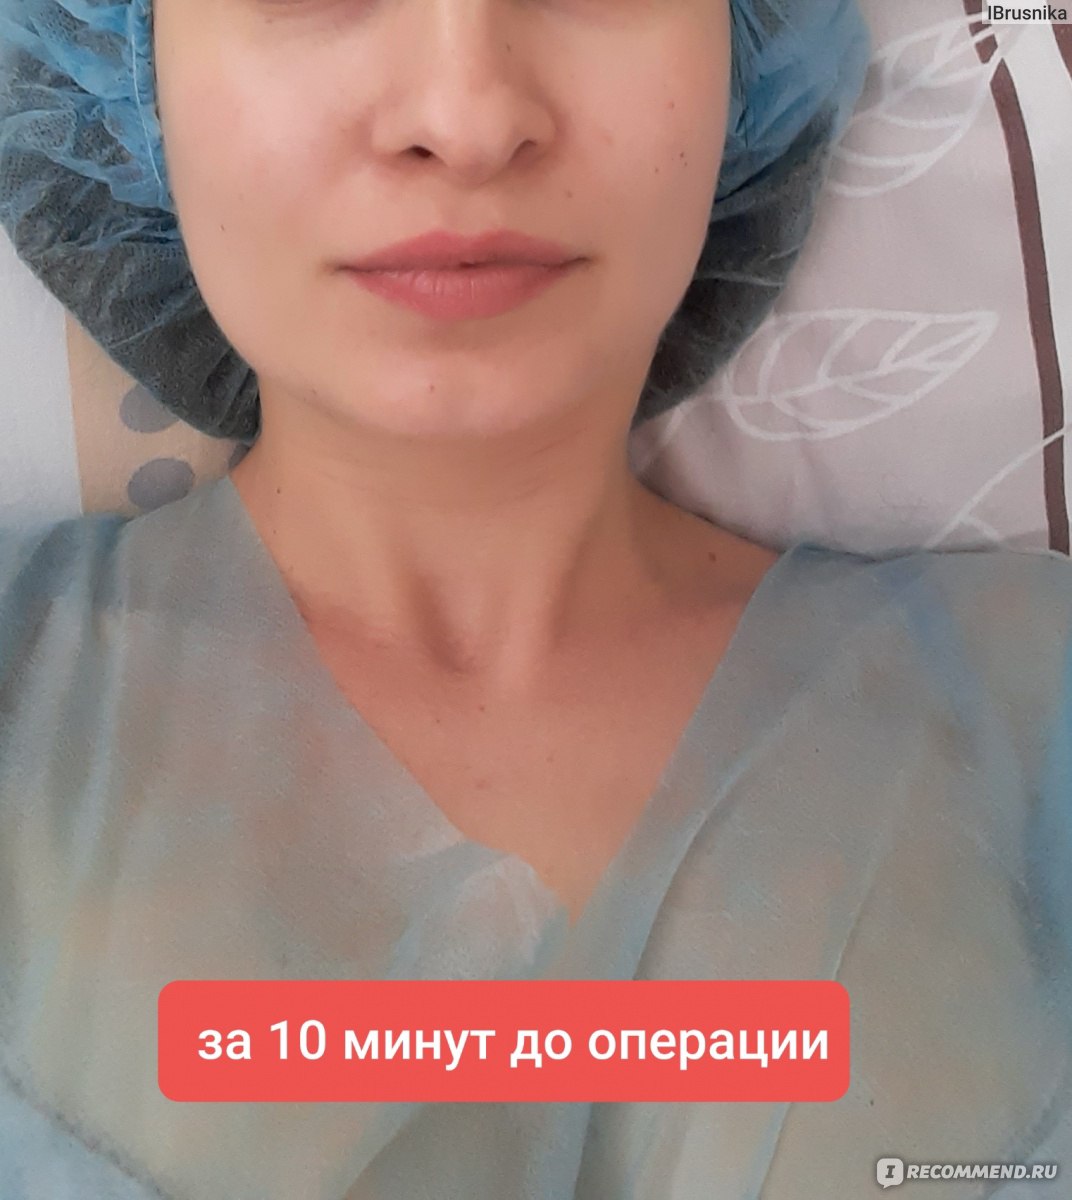 Промывание носа (кукушка) у ЛОРа в Минске - Цены в клинике Доктор ТУТ